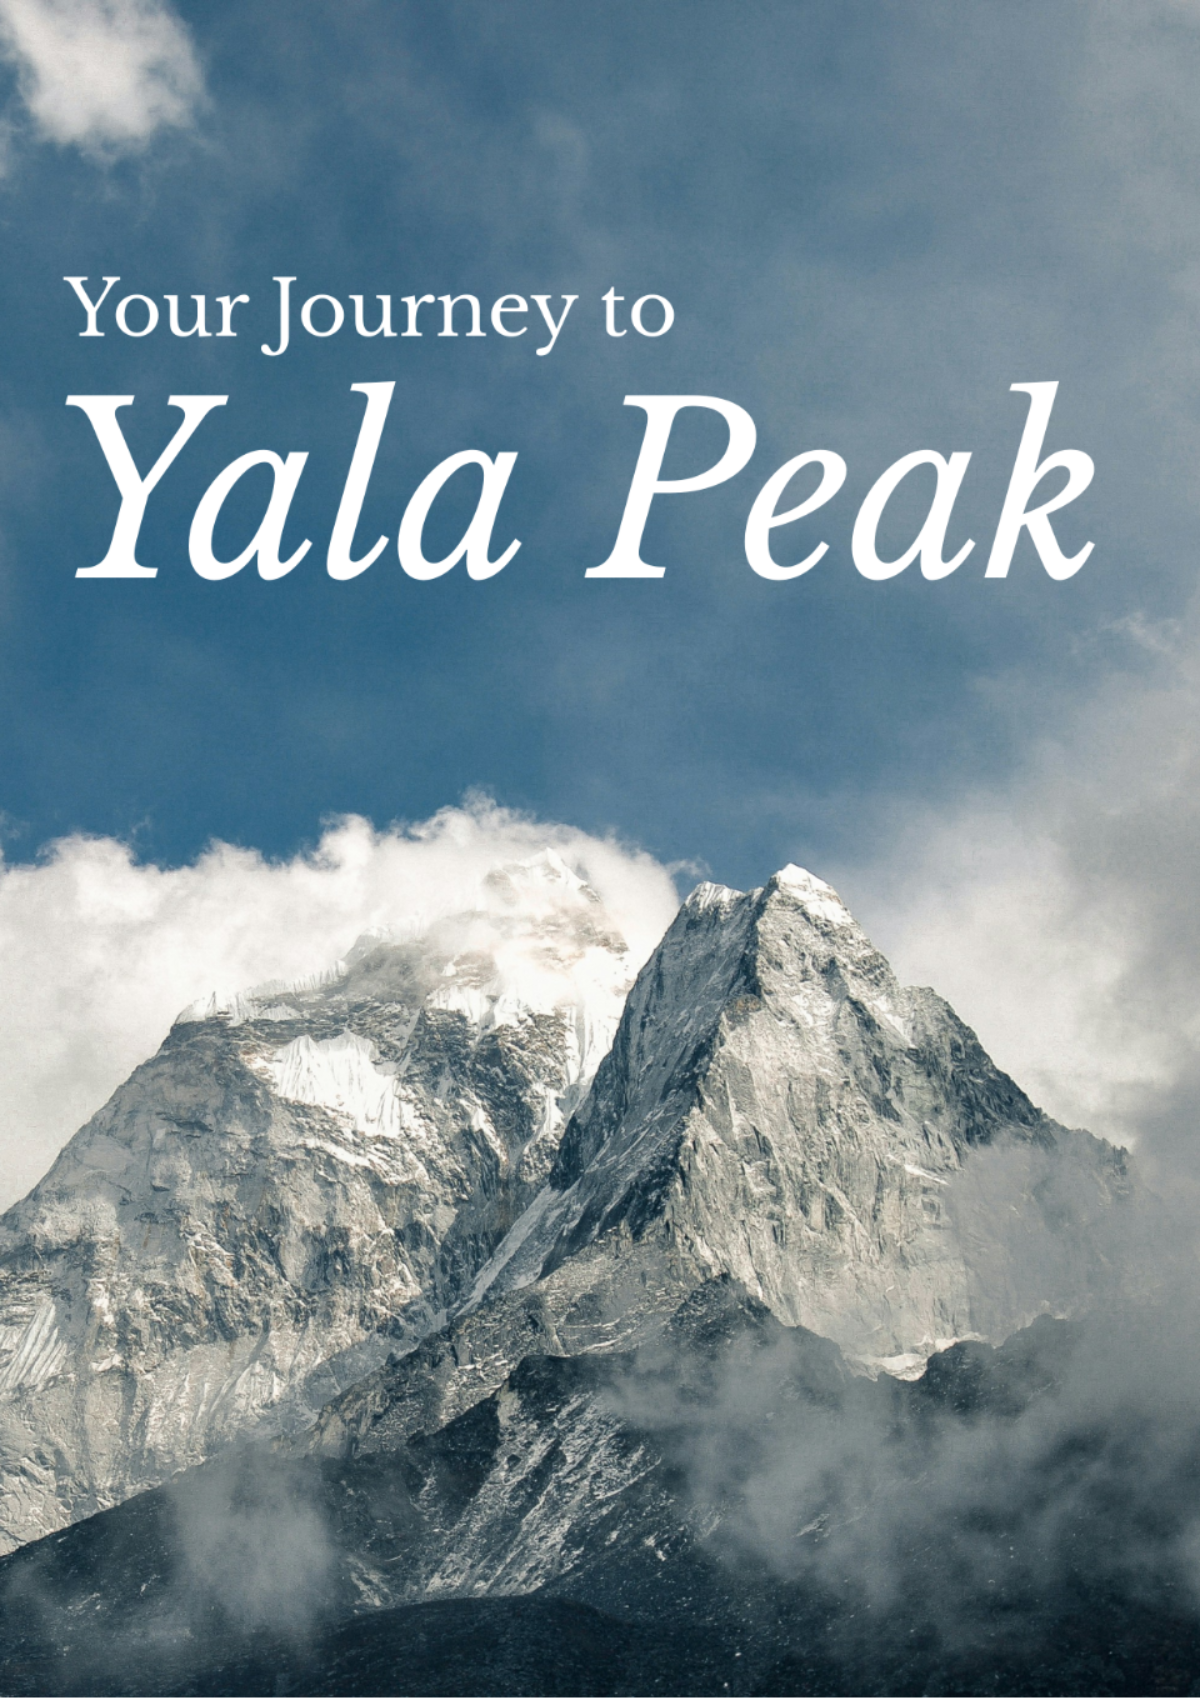 Yala Peak Itinerary Template